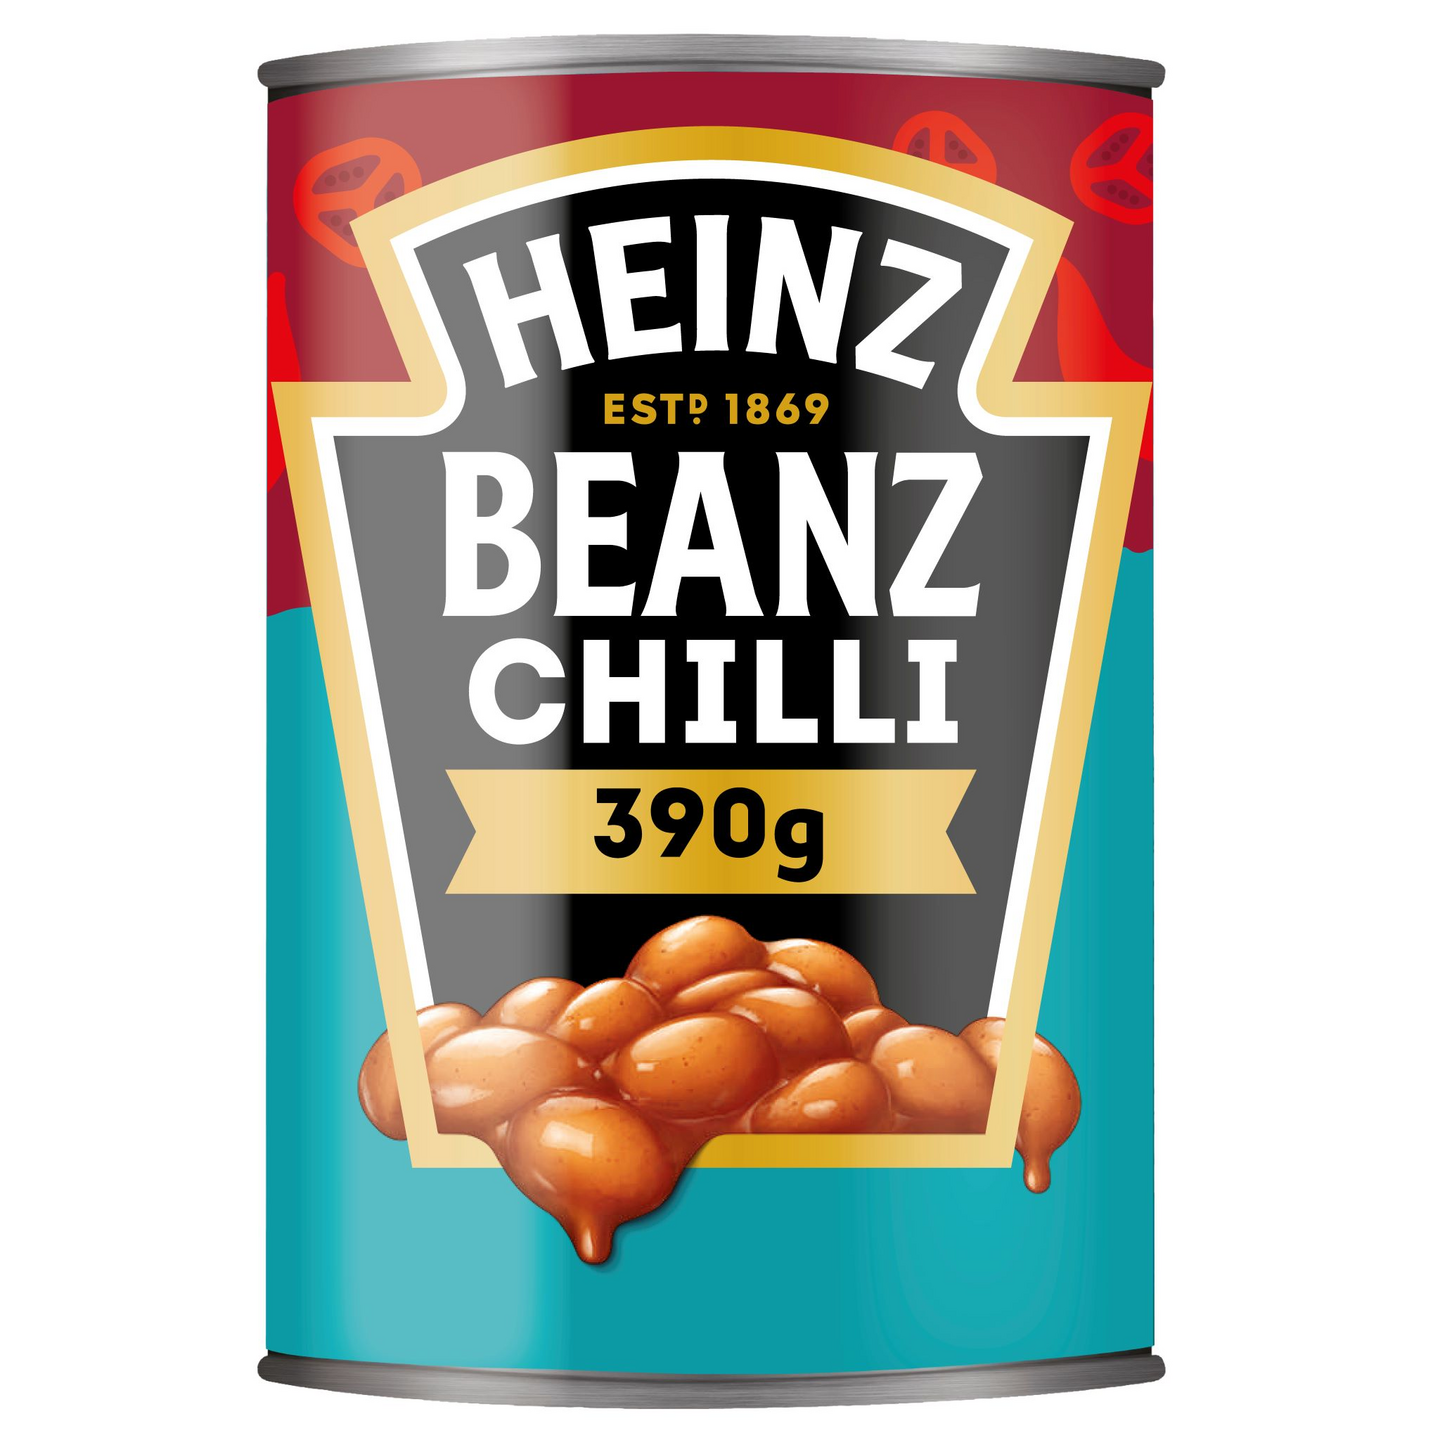 Heinz Chili beans valkoisia papuja 390g mausteisessa tomaattikastikkeessa